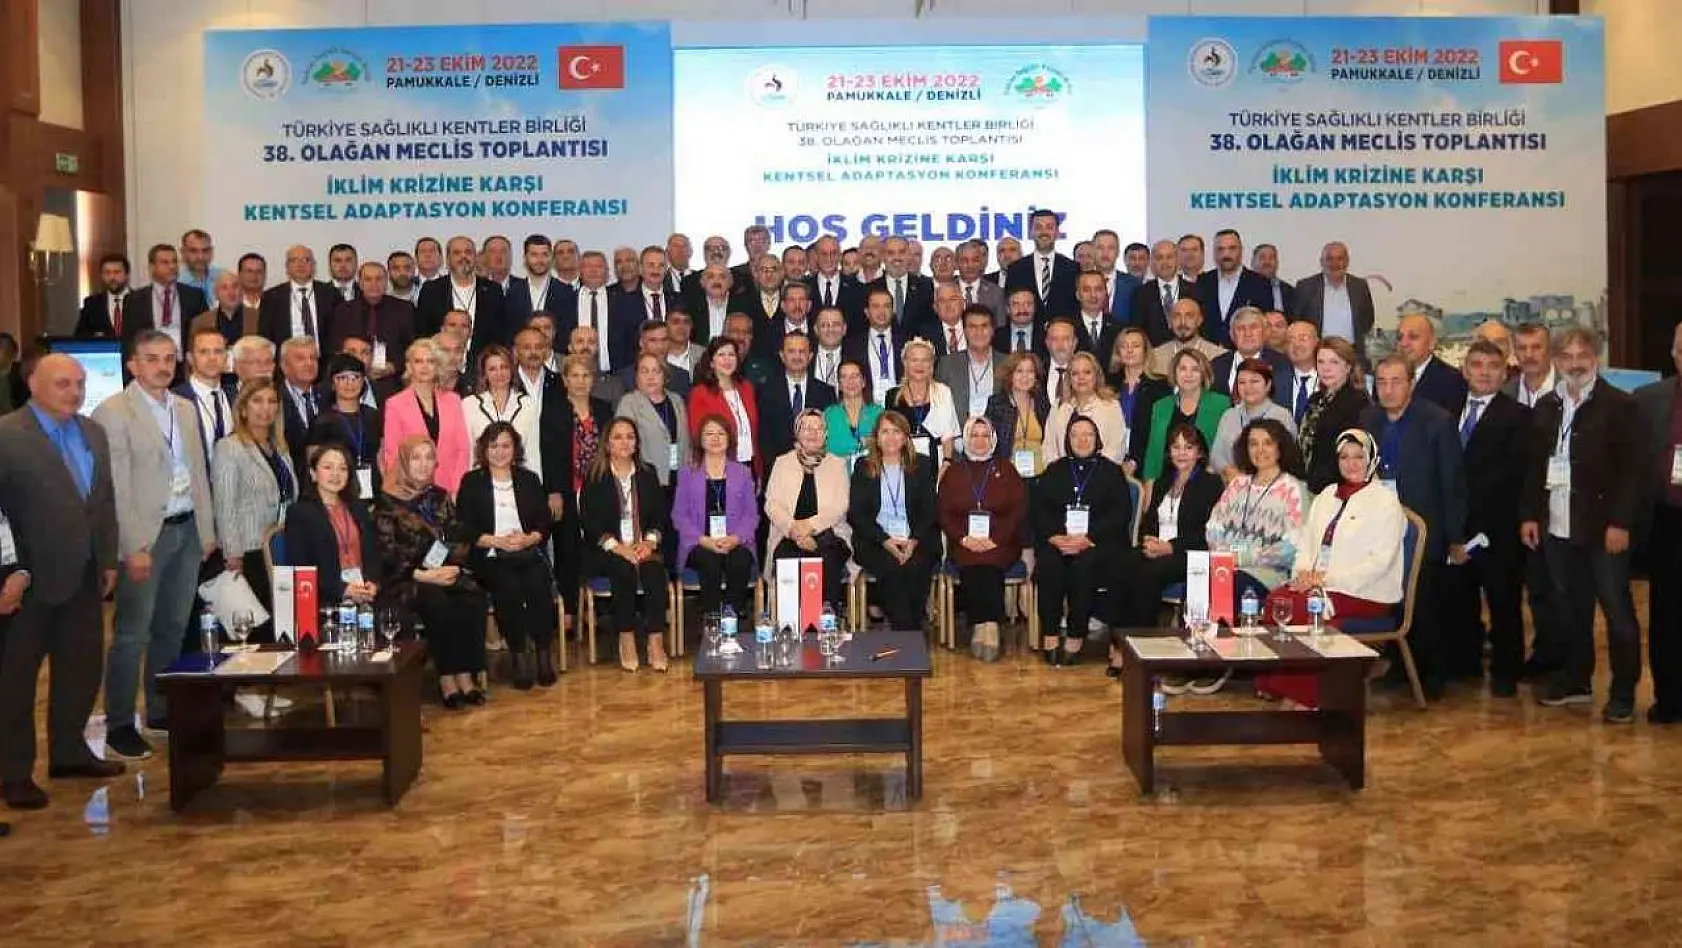 Pamukkale Belediyesi  önemli toplantıya ev sahipliği yaptı